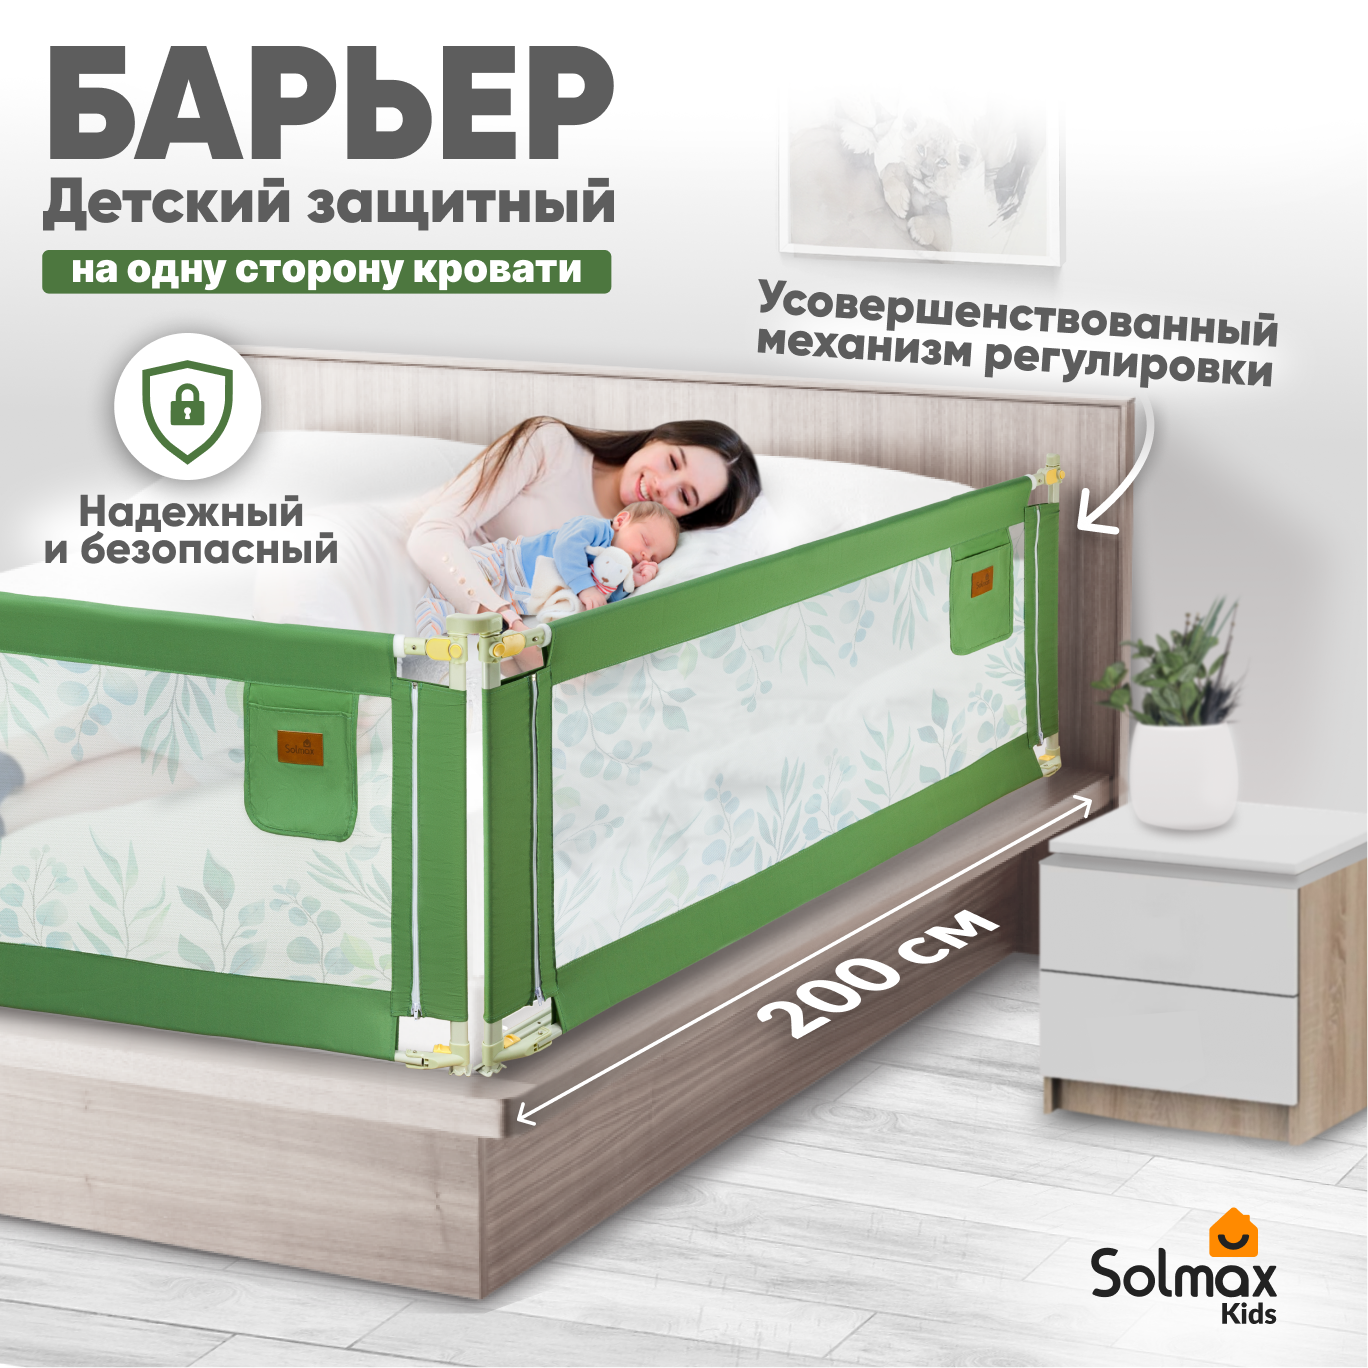 Барьер защитный для кровати от падений SOLMAX зеленый бортик в кроватку малыша 200 см барьер защитный для кровати от падений solmax синий бортик в кроватку для малыша 160 см